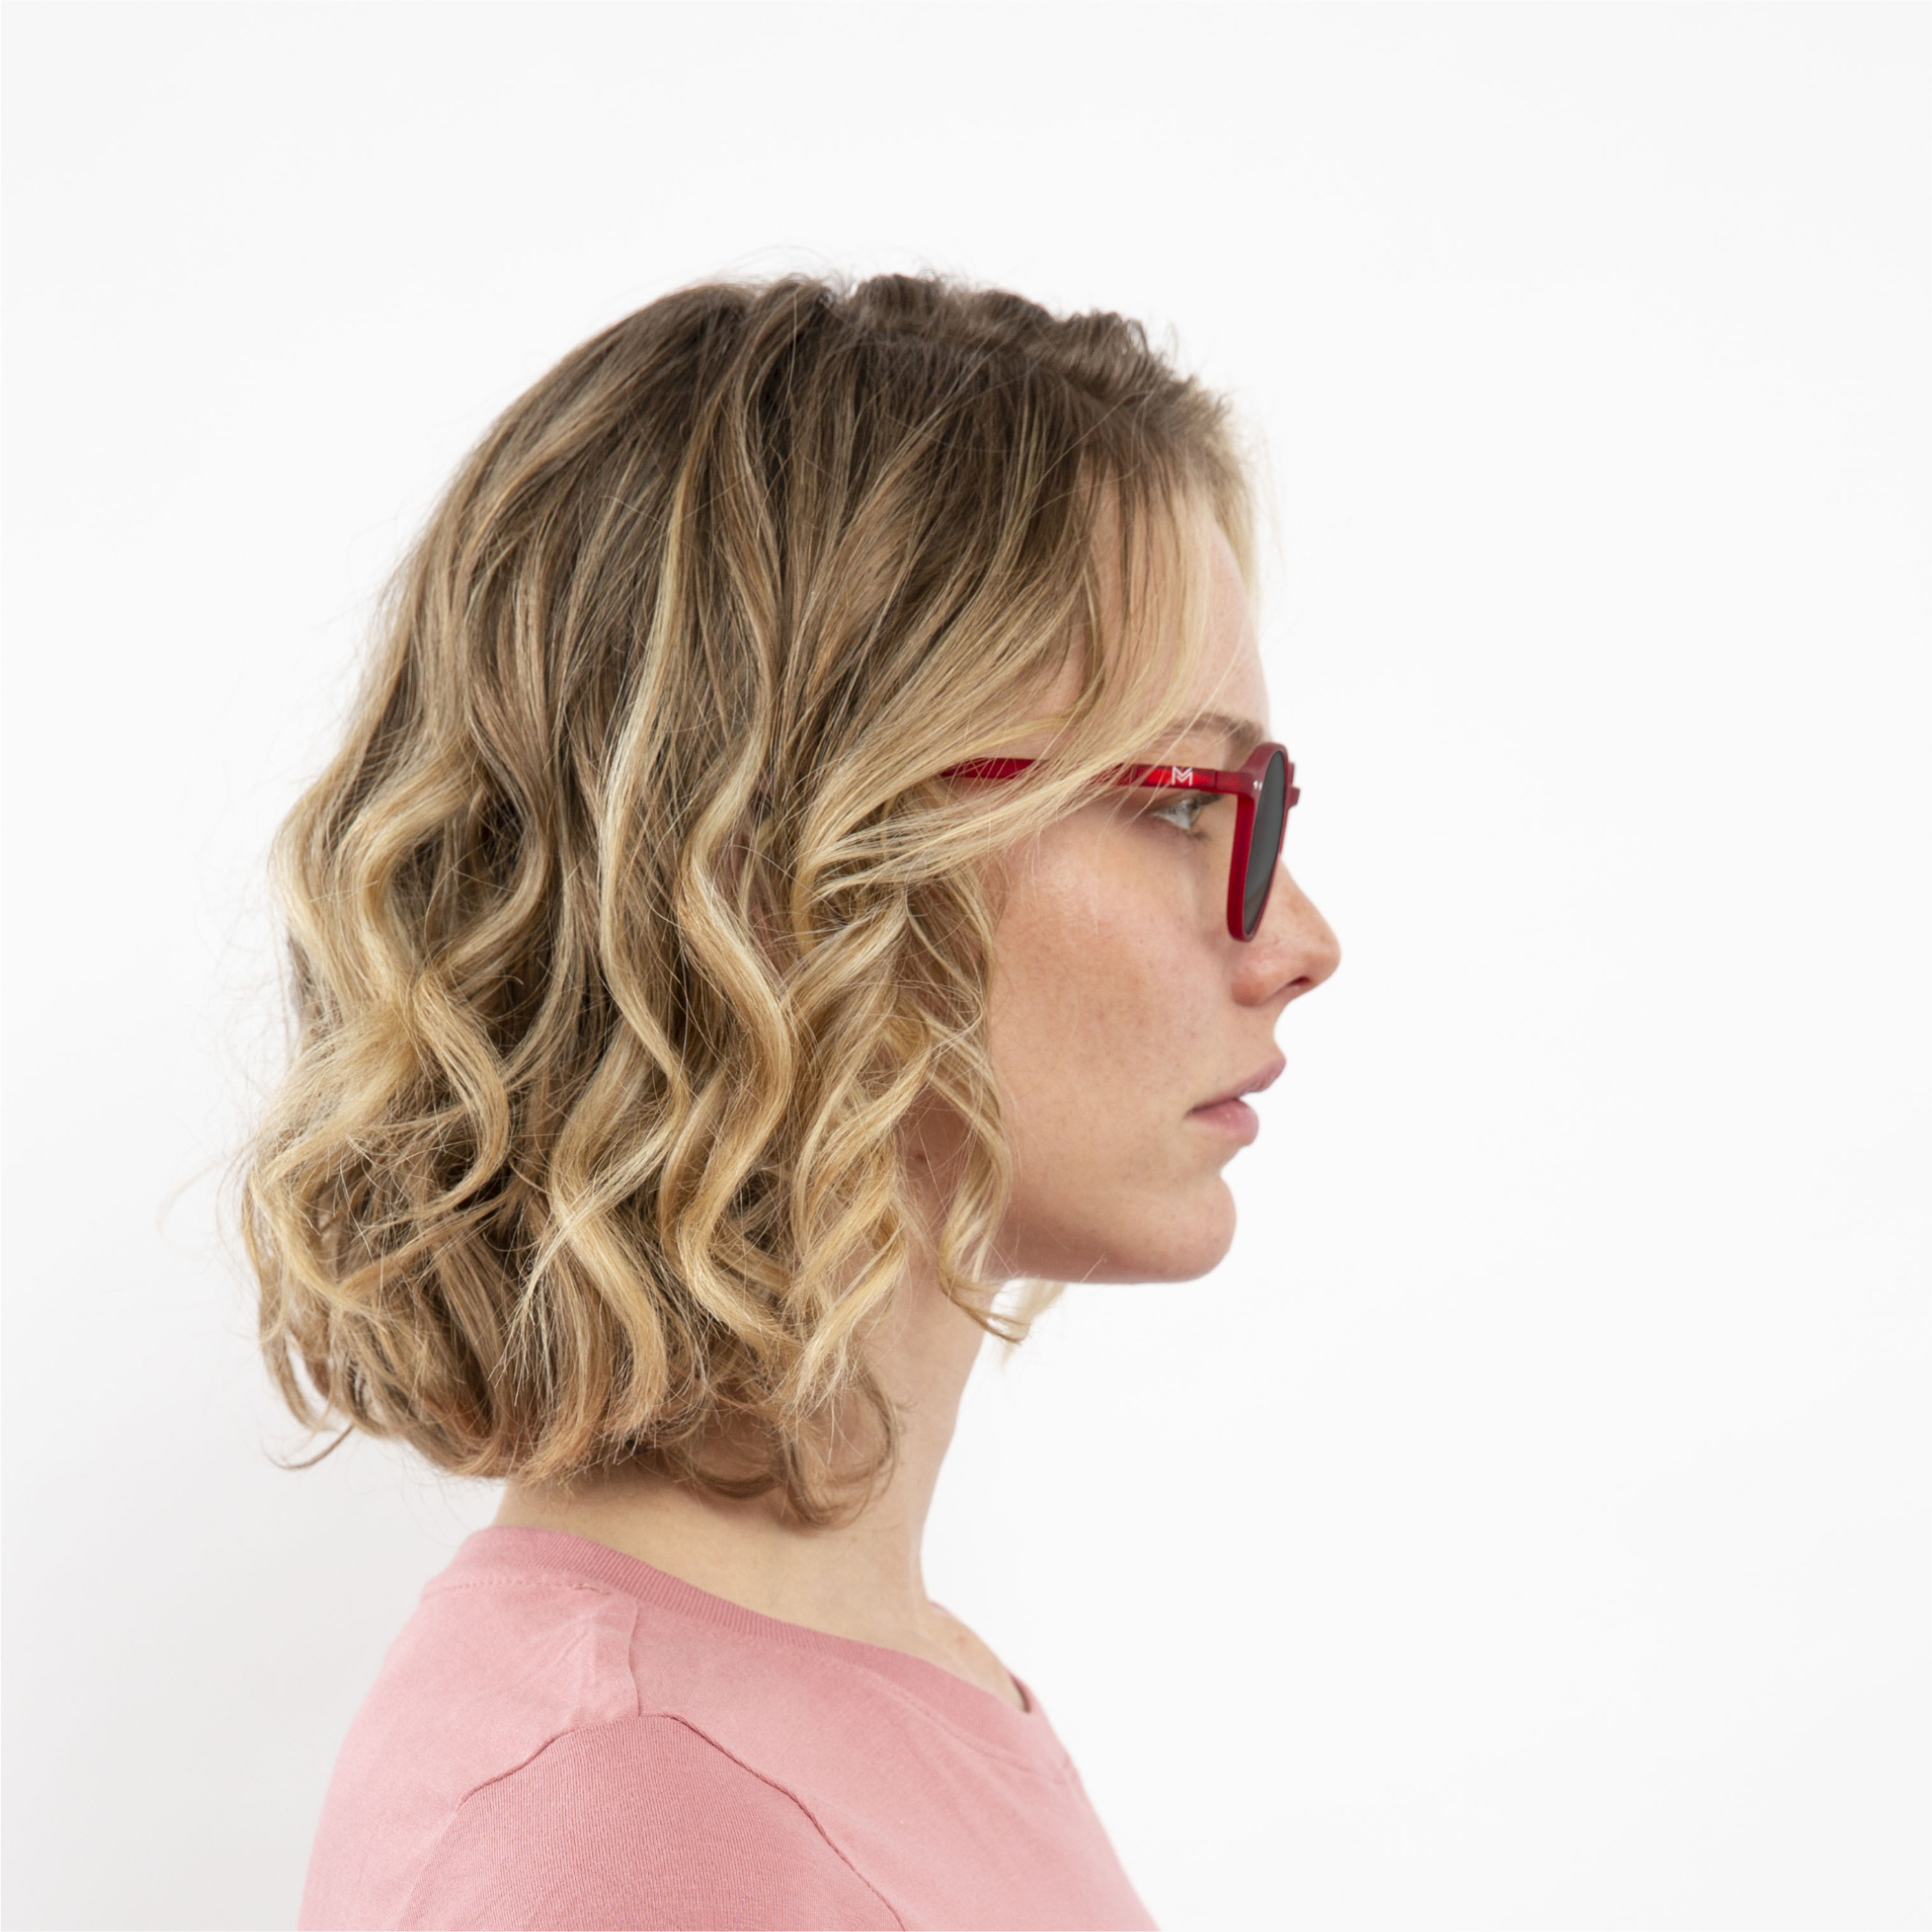 transition-photochromic-glasses-grey-lenses-women-luca-red-profile (2)